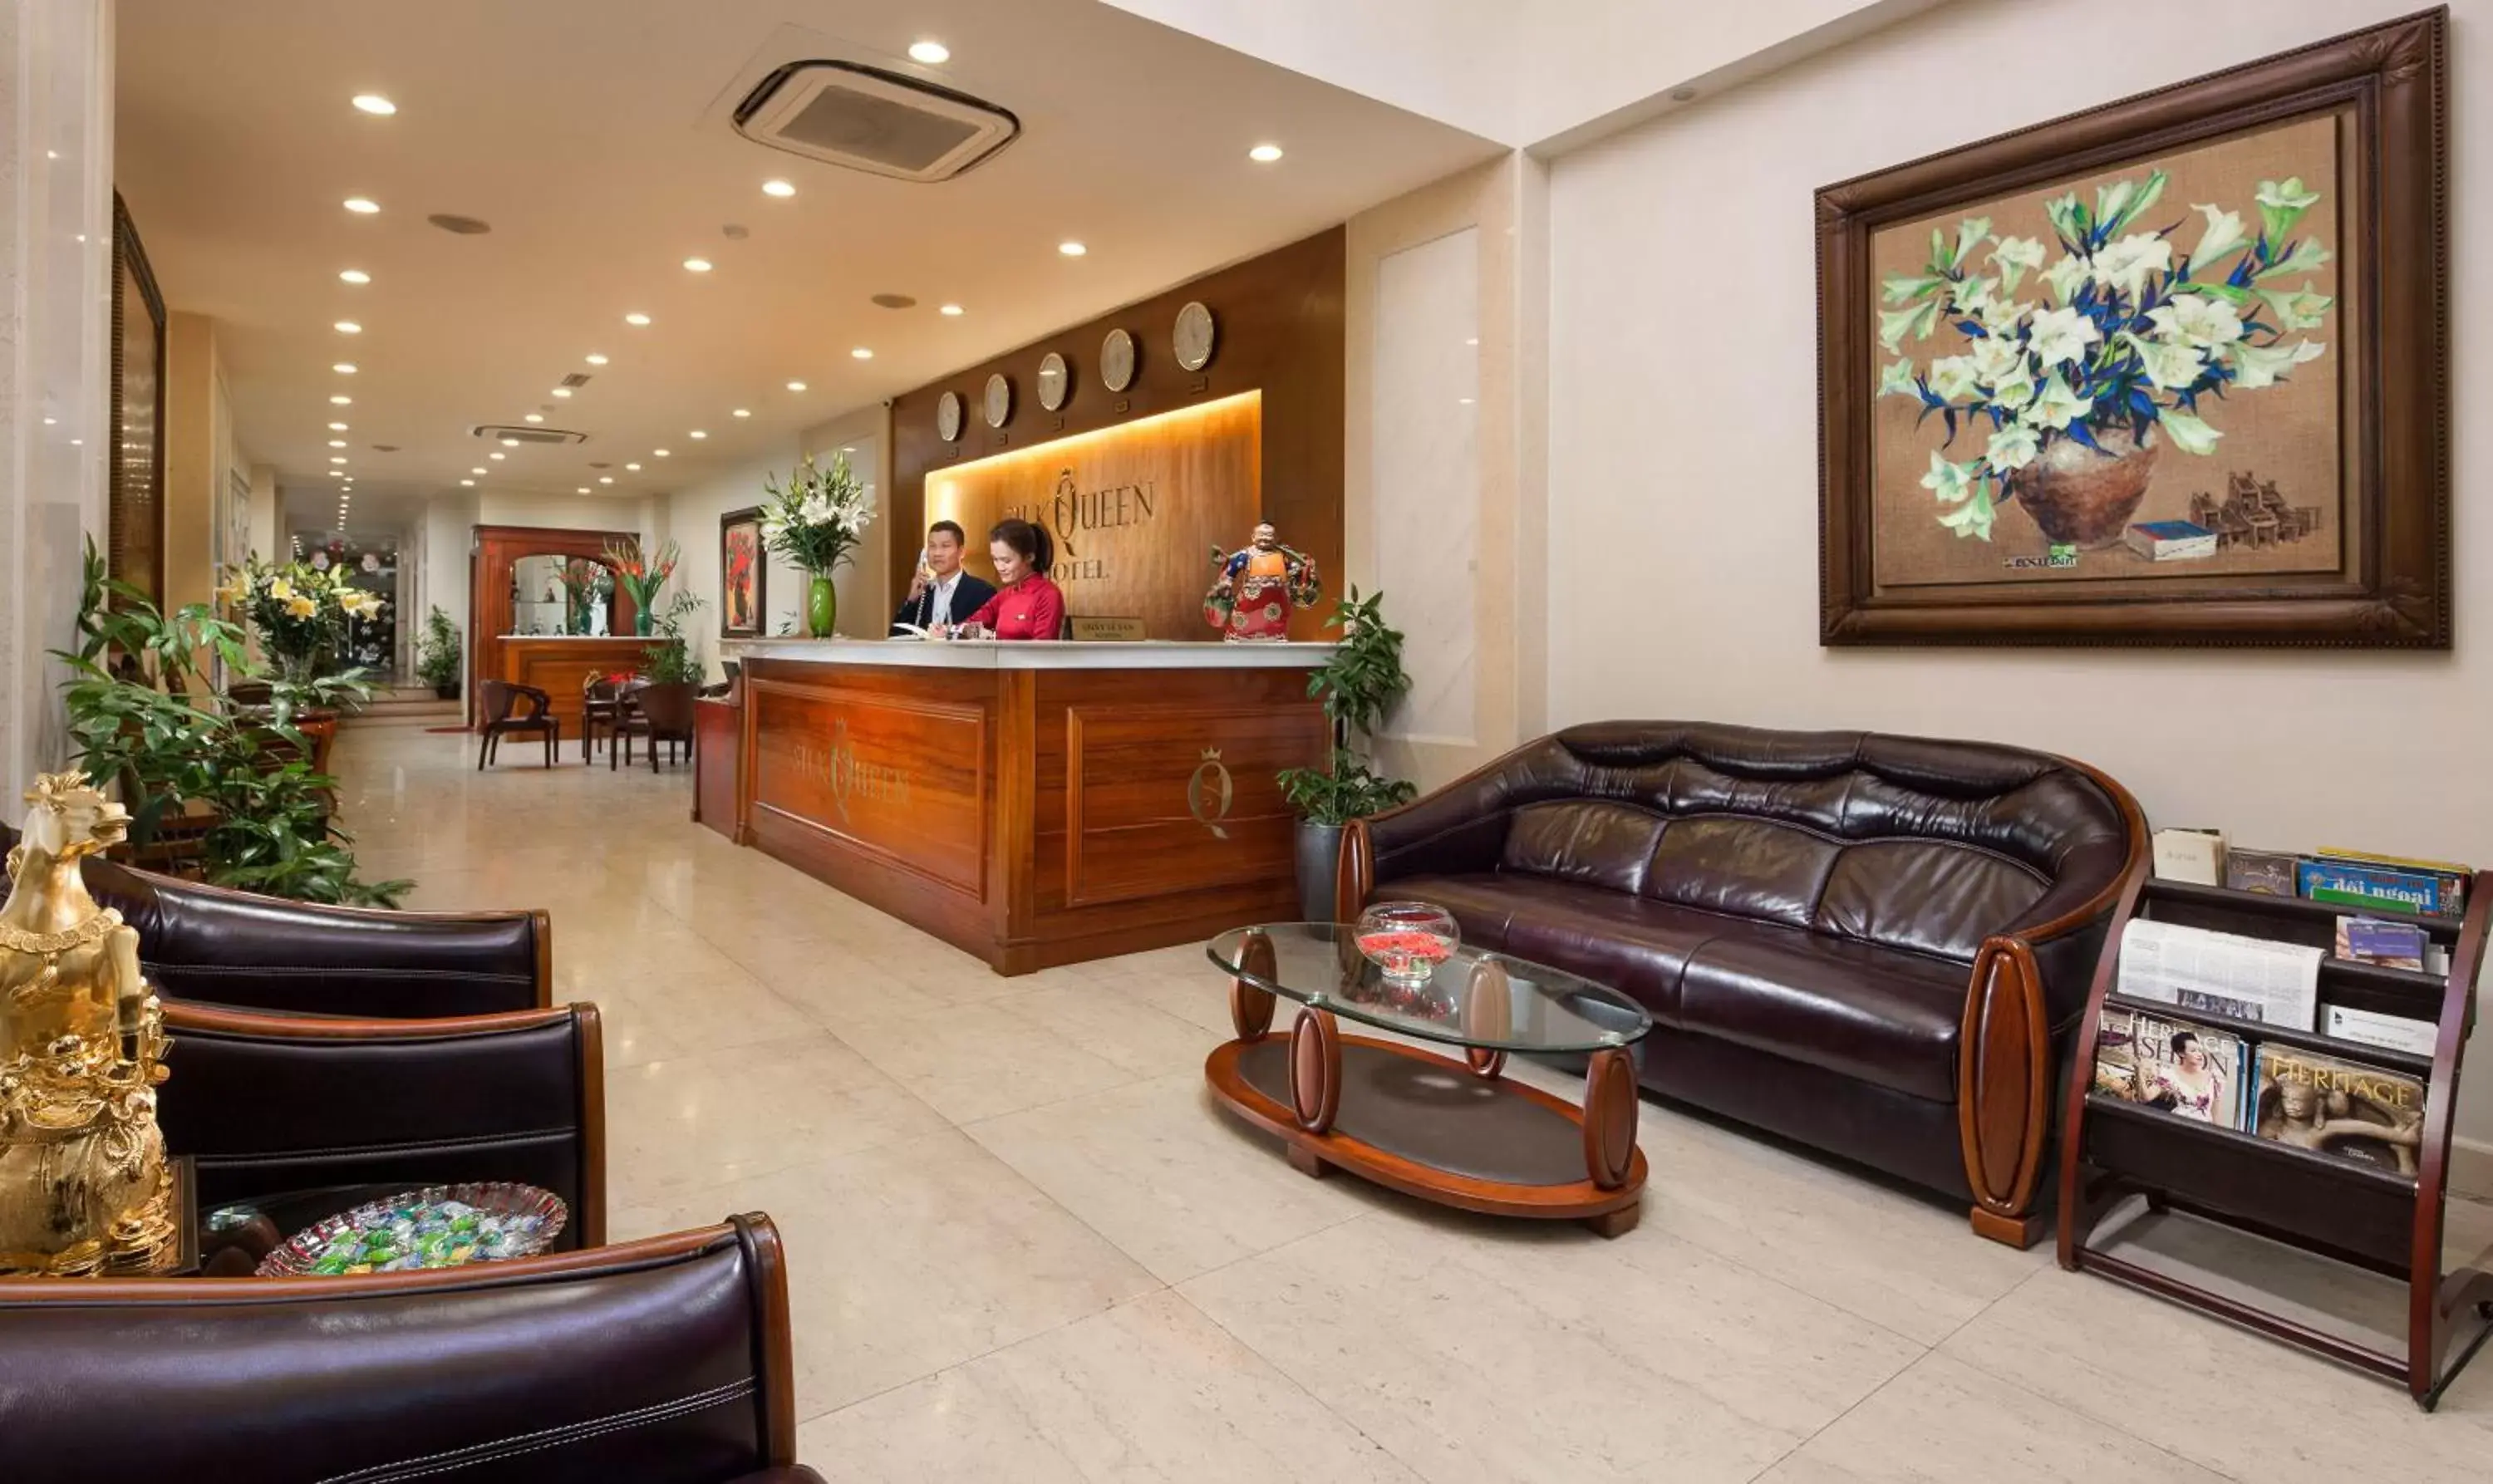 Lobby or reception, Lobby/Reception in Silk Queen Hotel